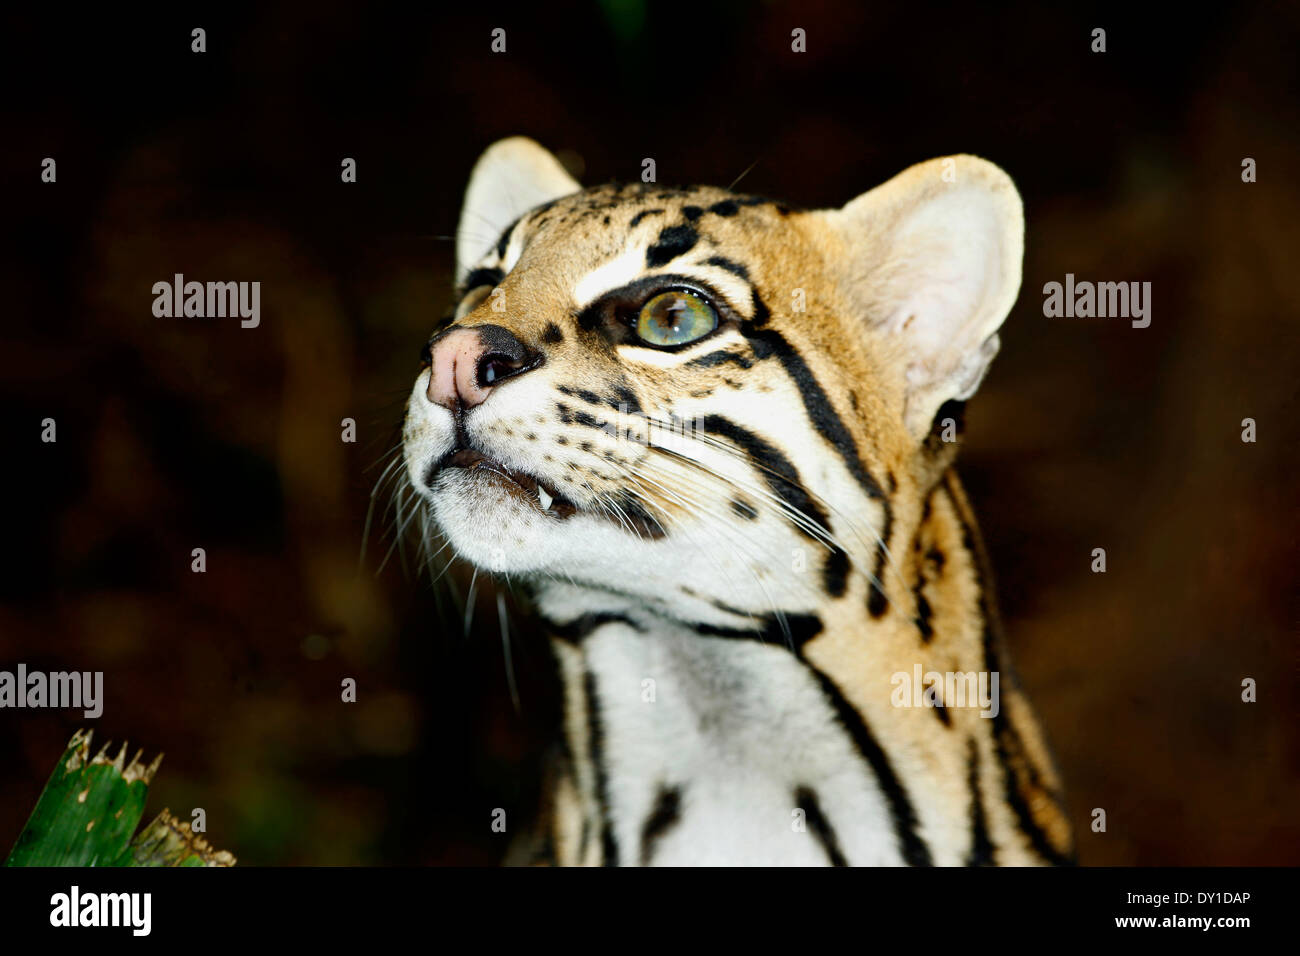 Ocelot (Leopardus pardalis) Closeup Stock Photo